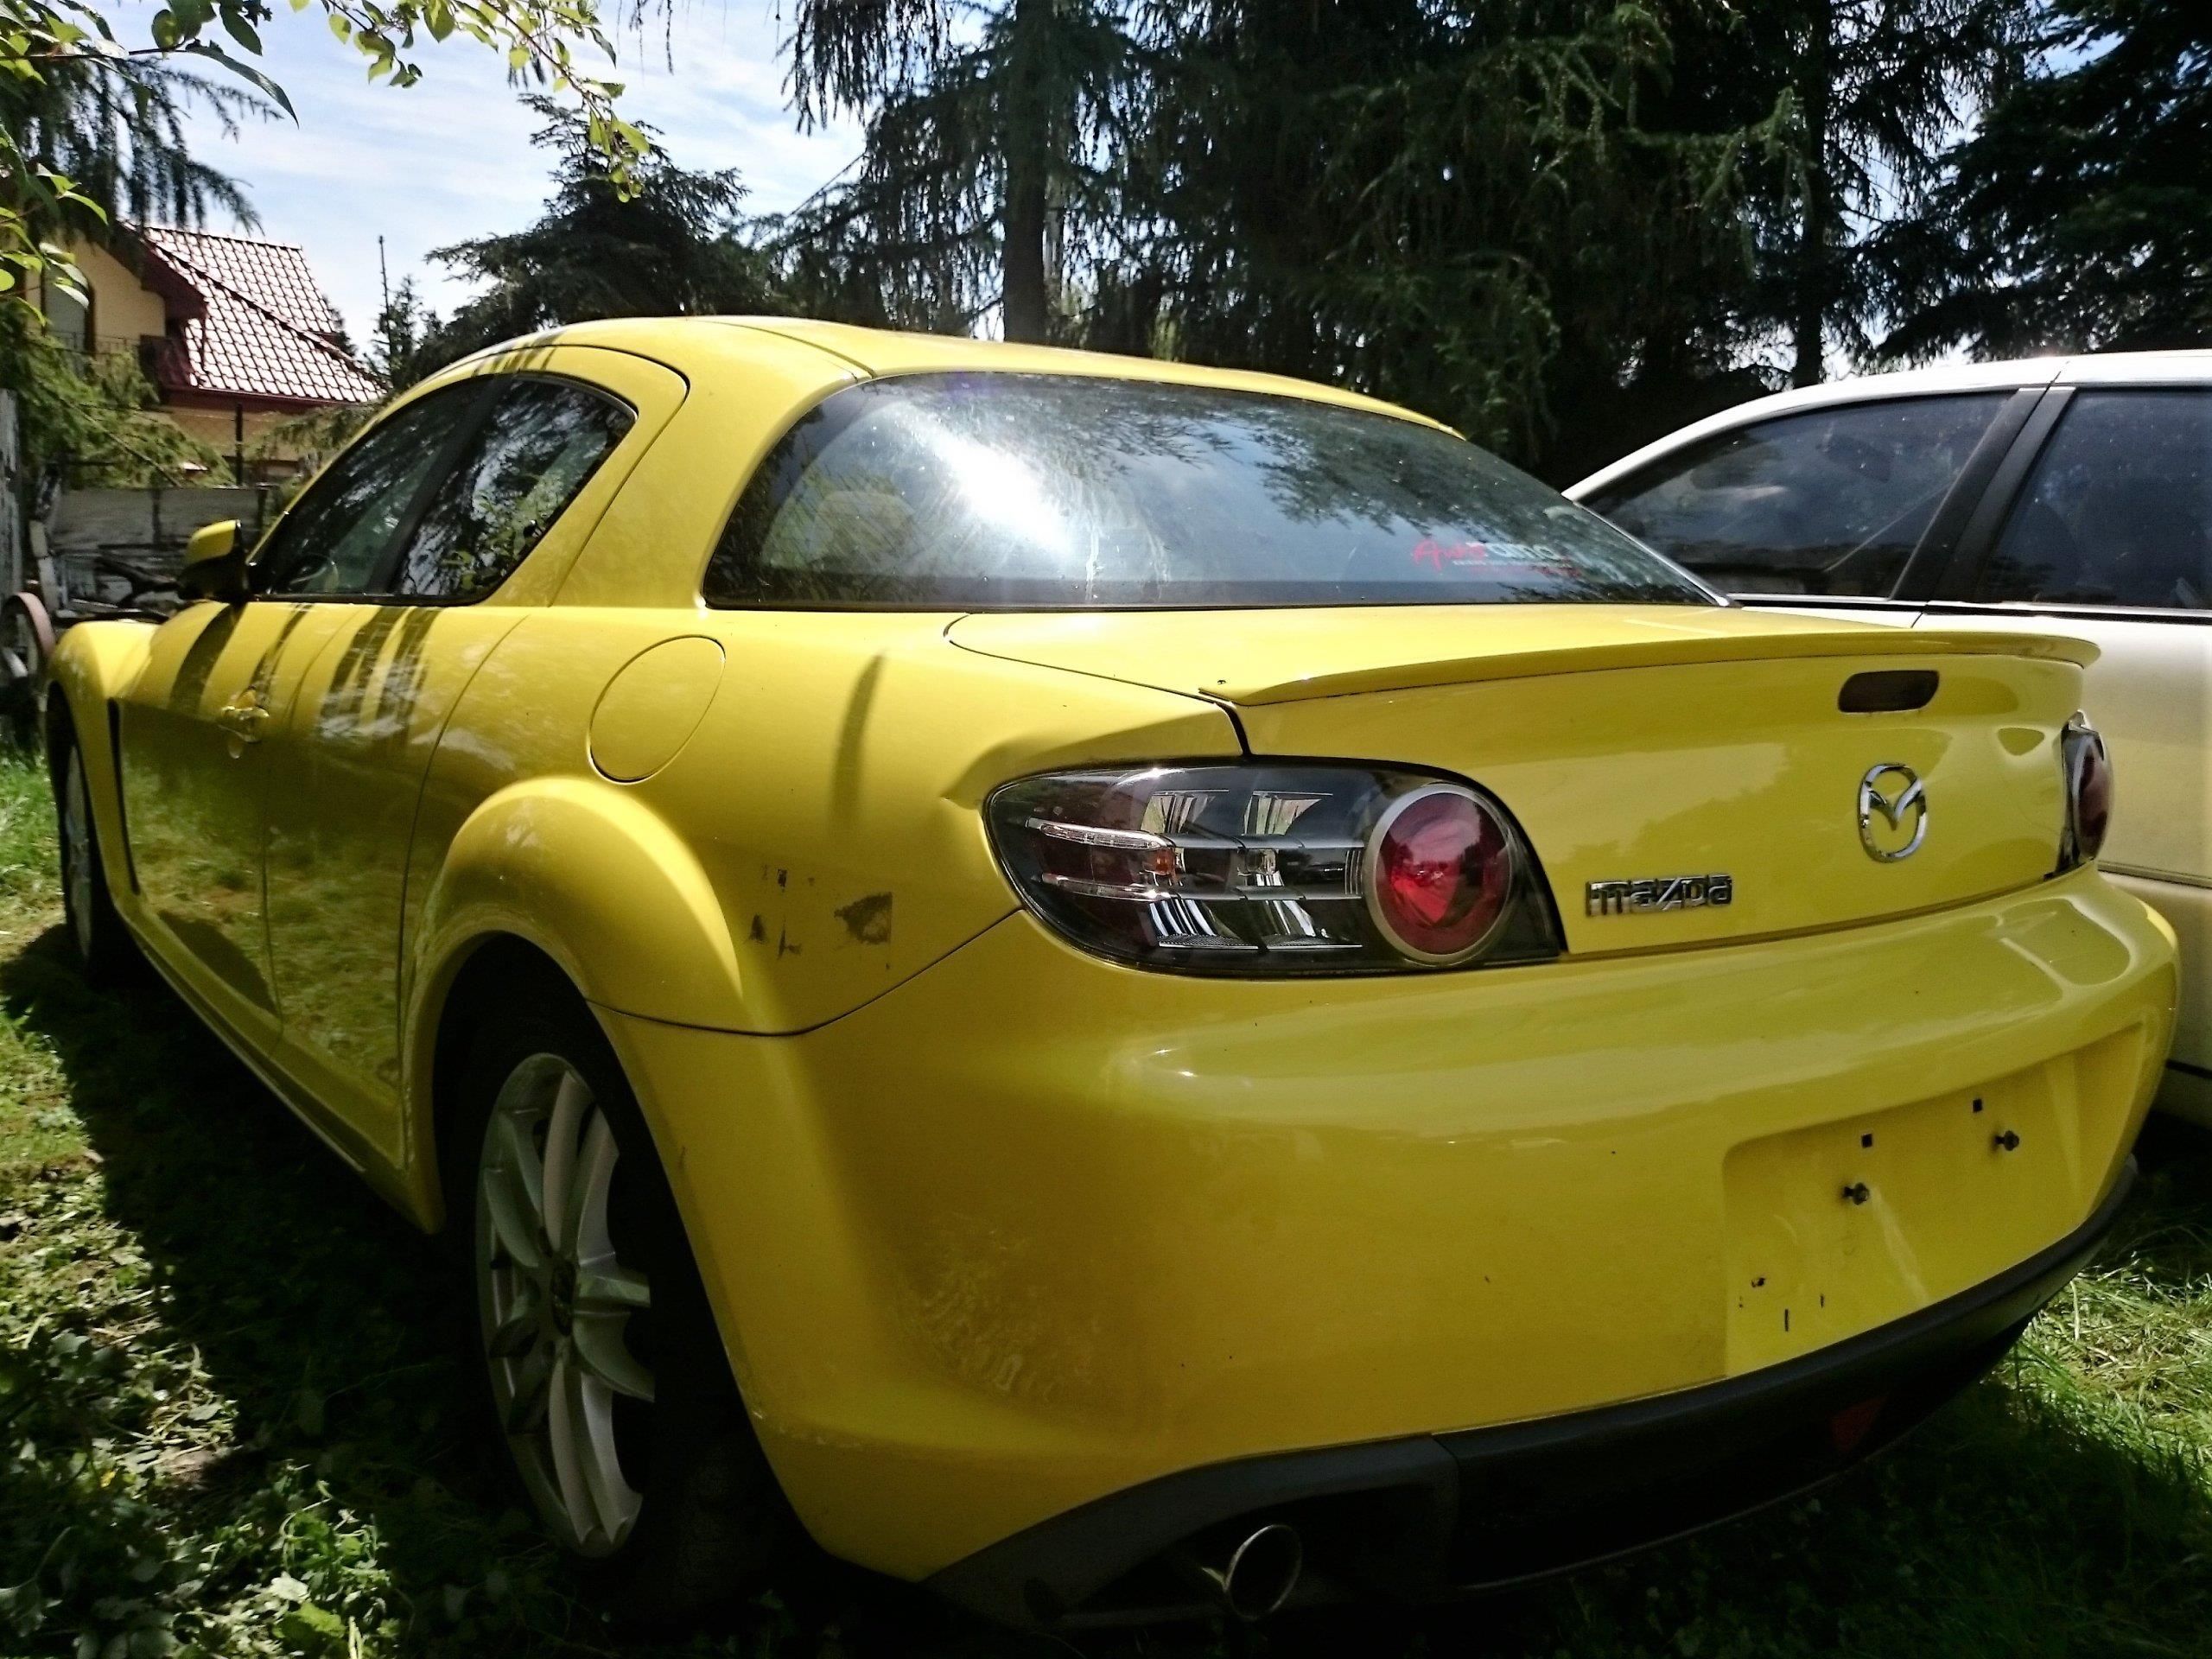 Mazda RX8 2004 benzyna 230KM żółty Opinie i ceny na